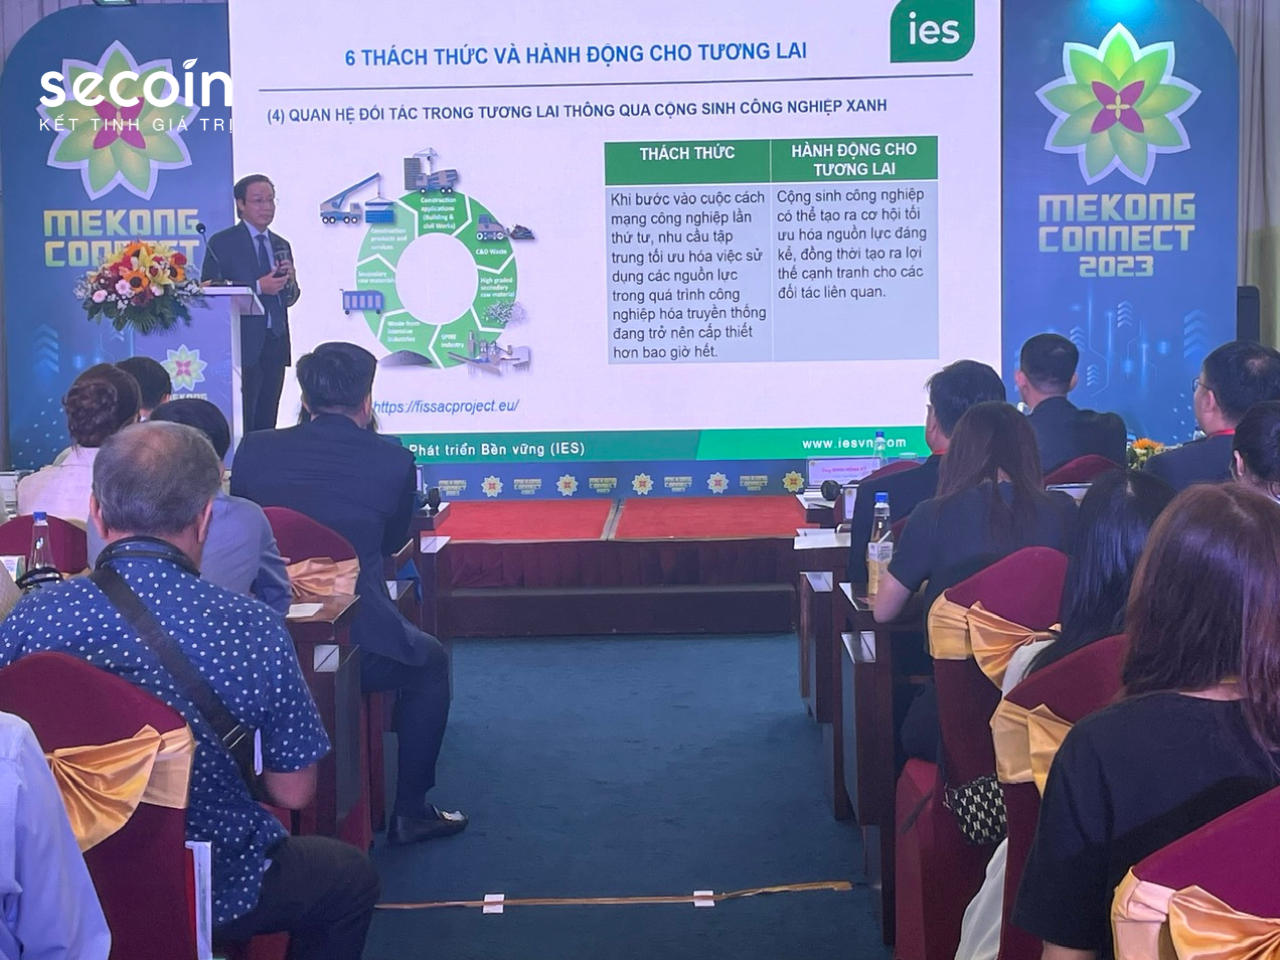 Secoin tham gia Diễn đàn Mekong Connect 2023